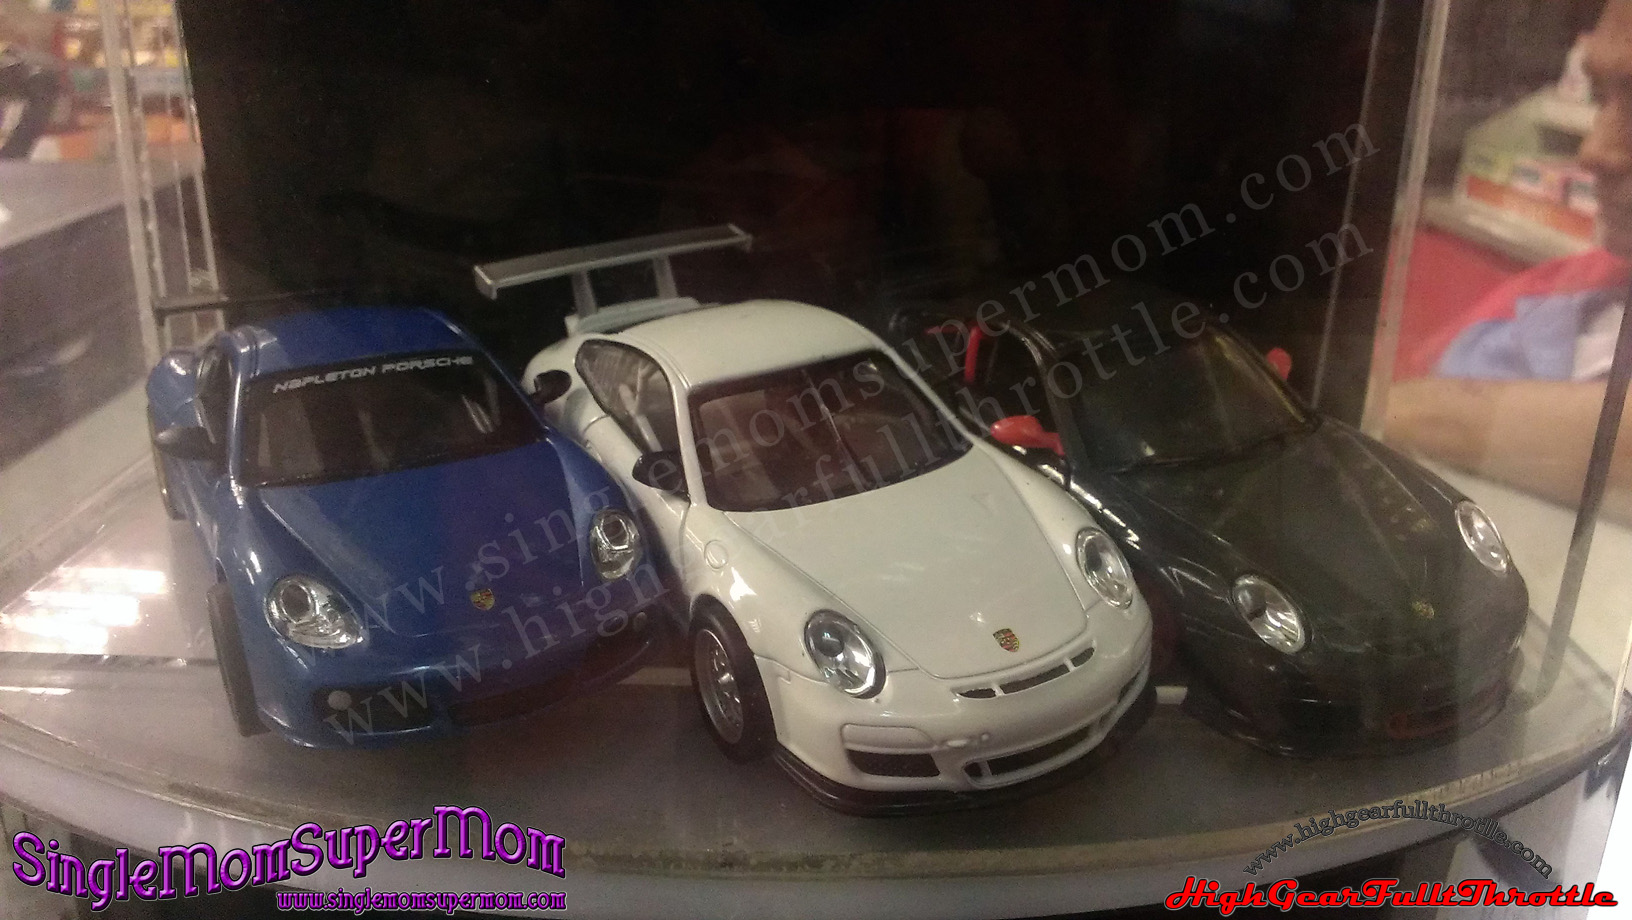 Petron Grab a Porsche toy car collectables